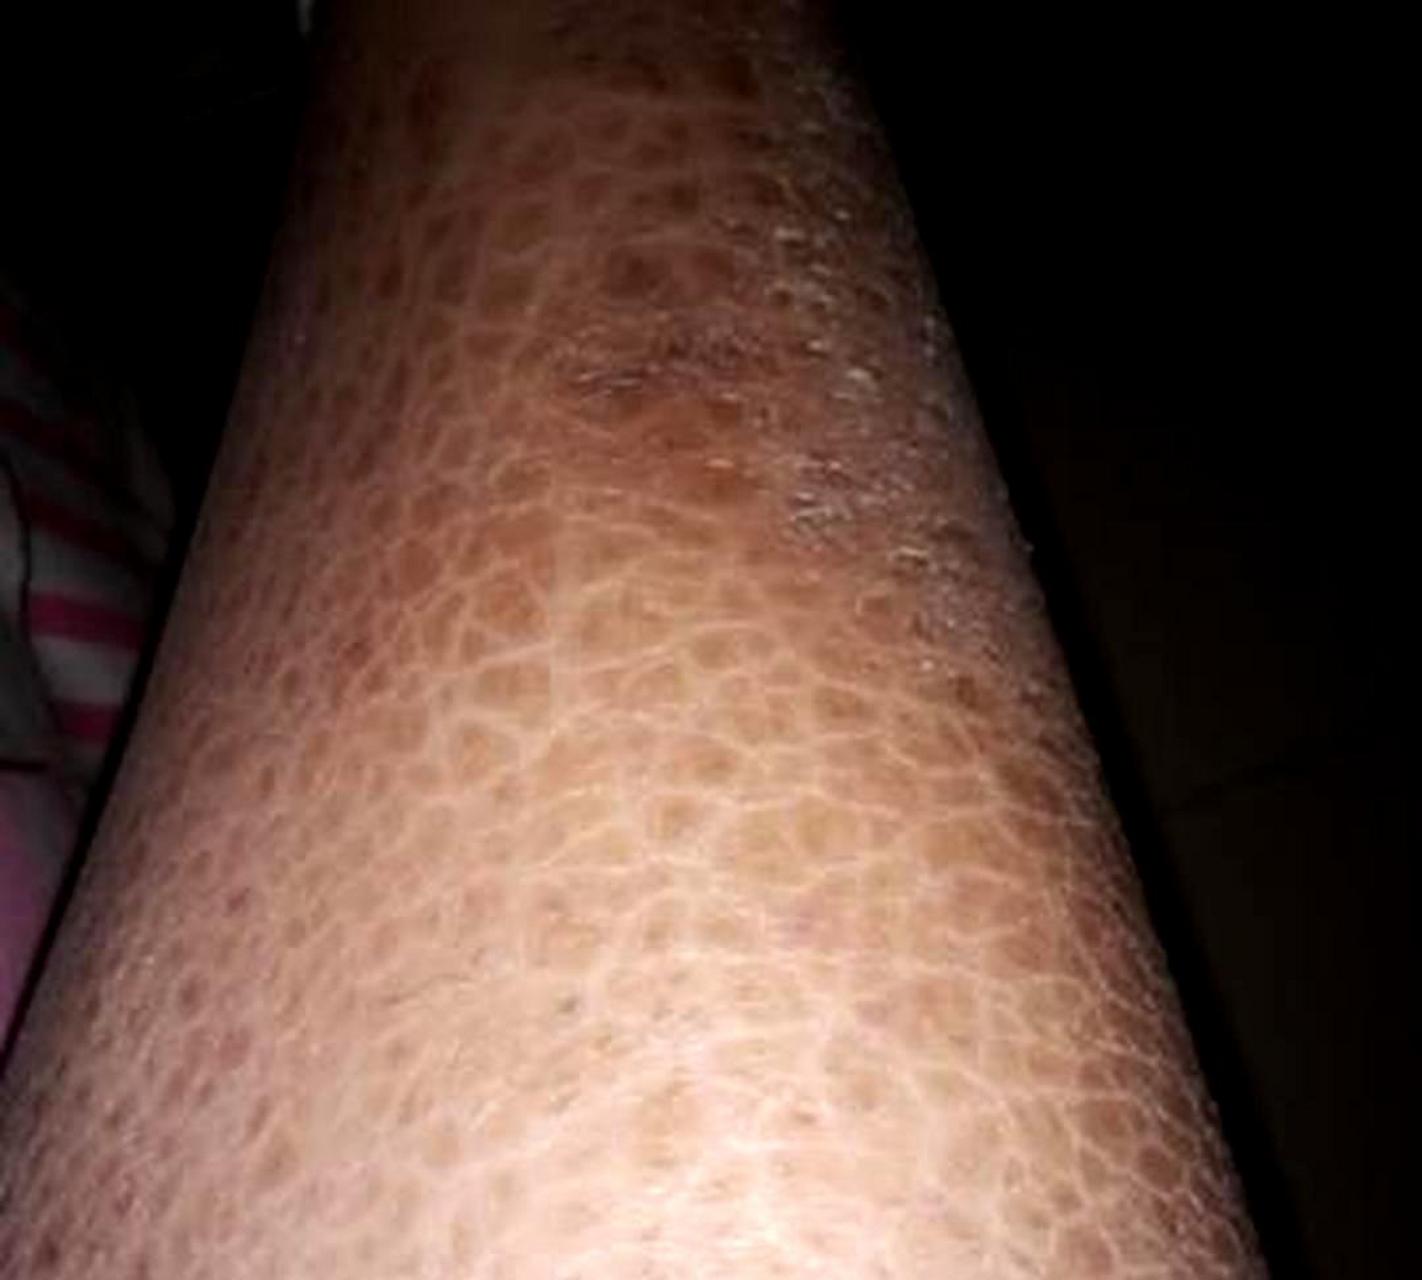 昨晚腿痒,今早发现皮肤出现这种情况,请问还有治疗的方法吗?